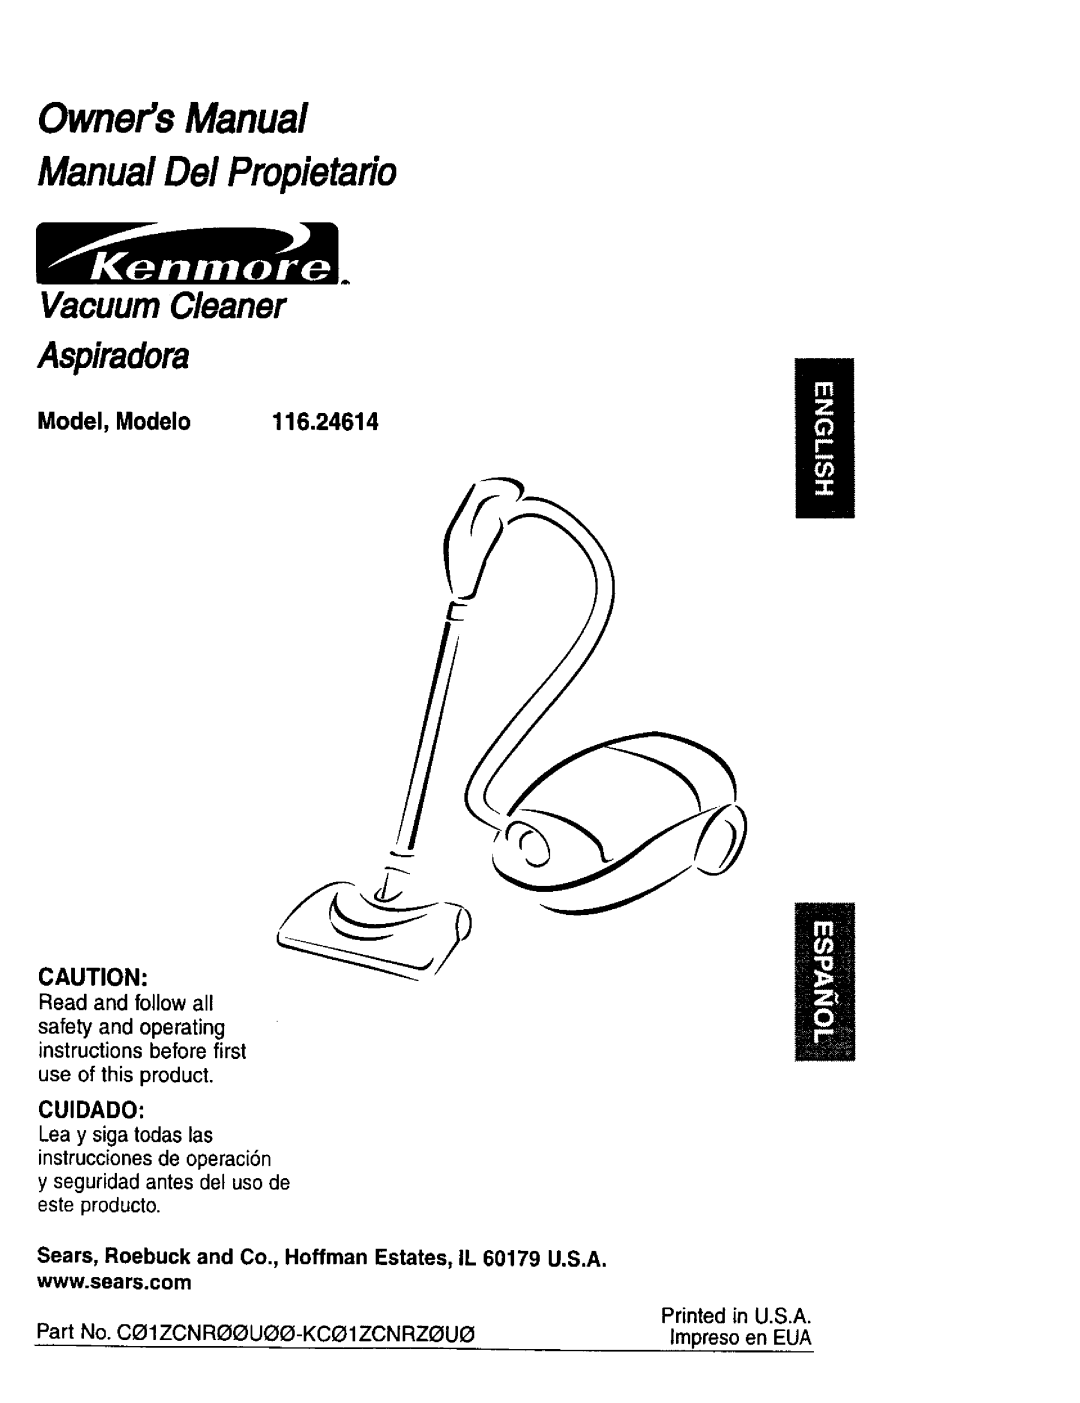 Kenmore 624 owner manual Model, Modelo 116,24614, OwnersManual ManualDel Propietario, Vacuum Cleaner, Aspiradora, product 